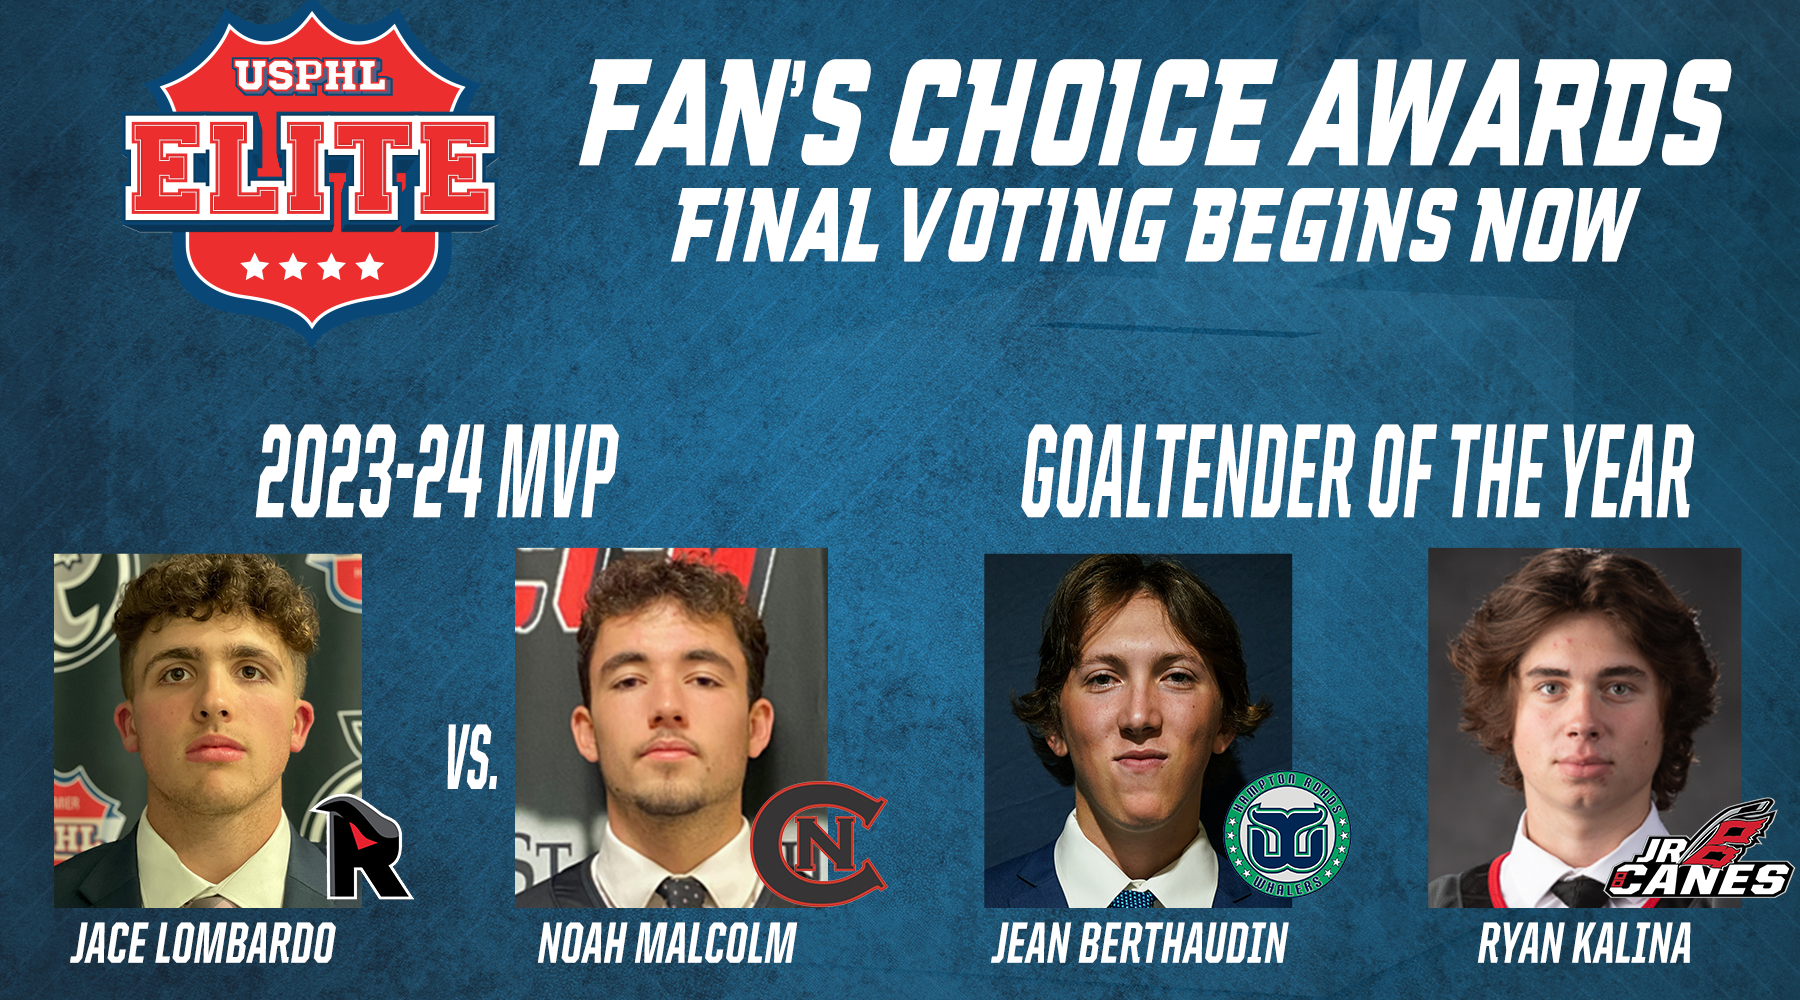 USPHL Elite Fan’s Choice Awards Final Voting Now Open